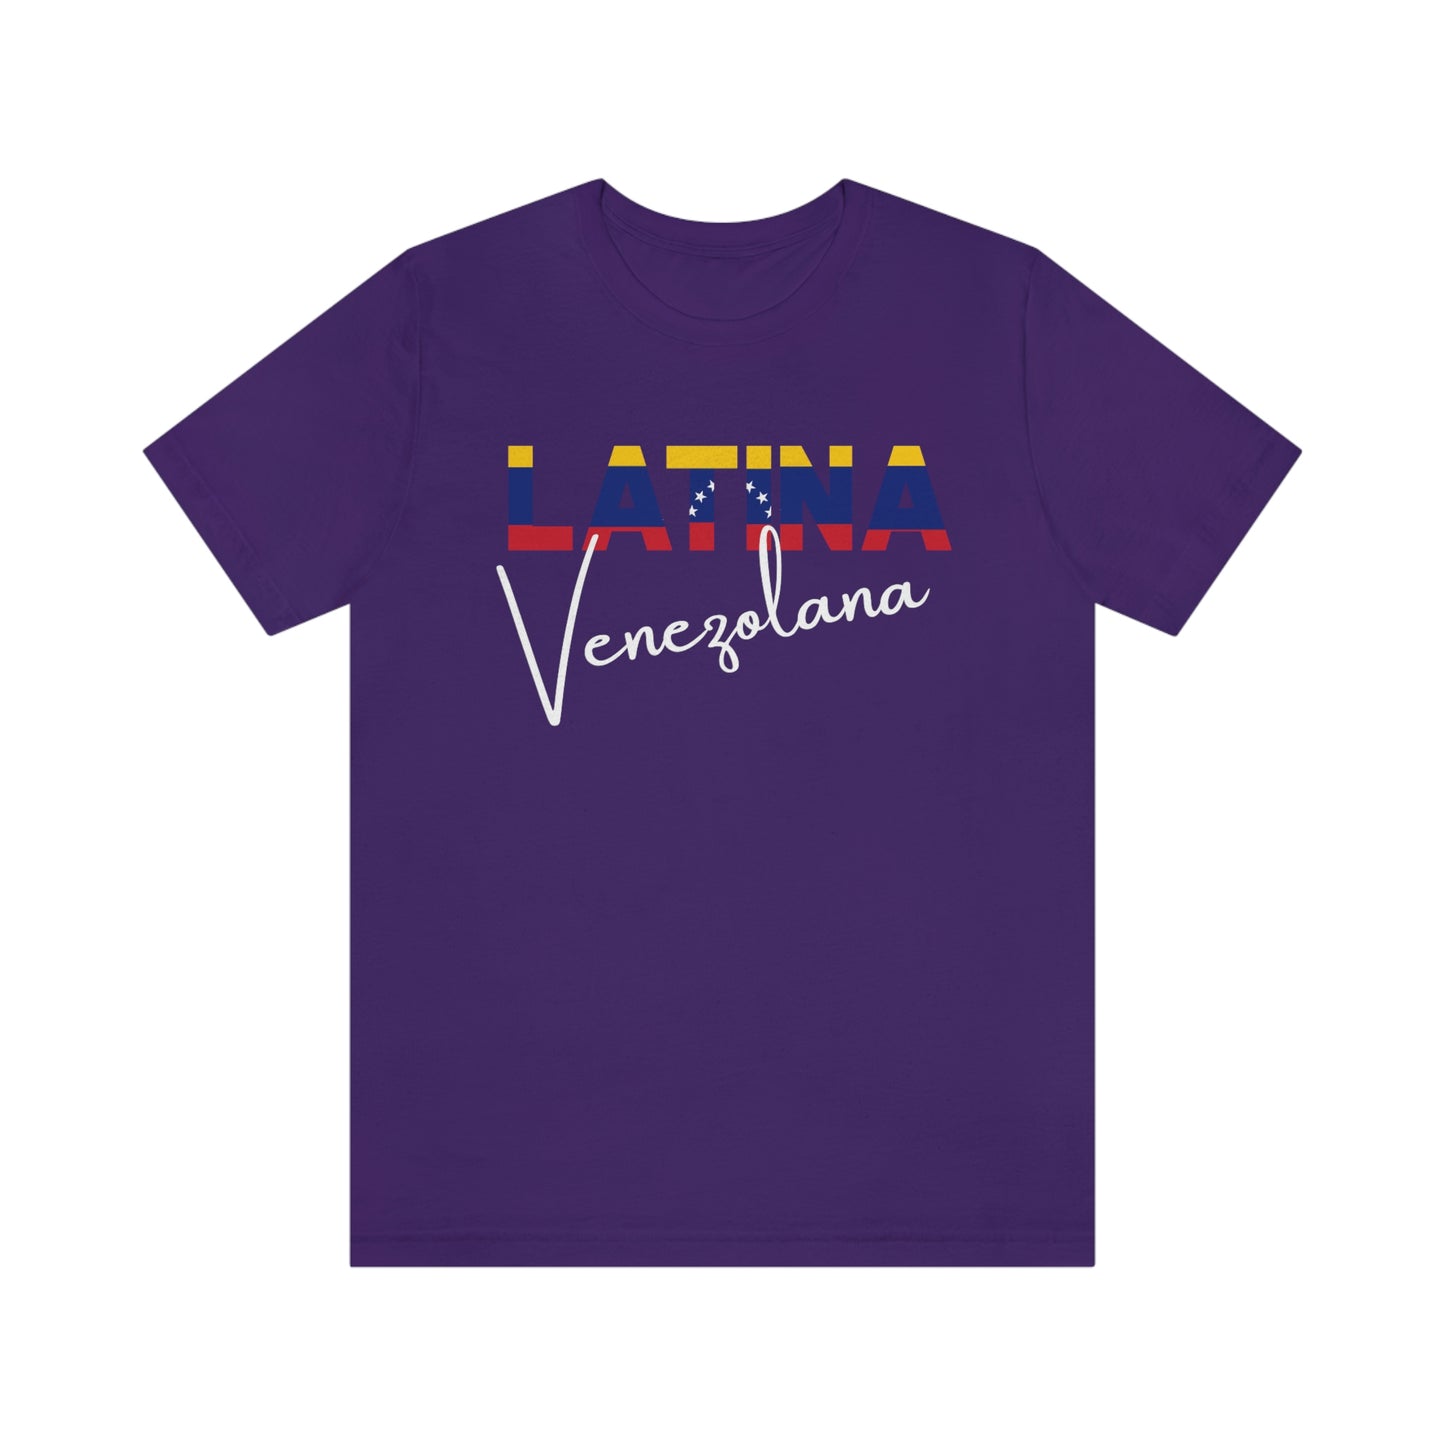 Latina Venezolana, Shirt